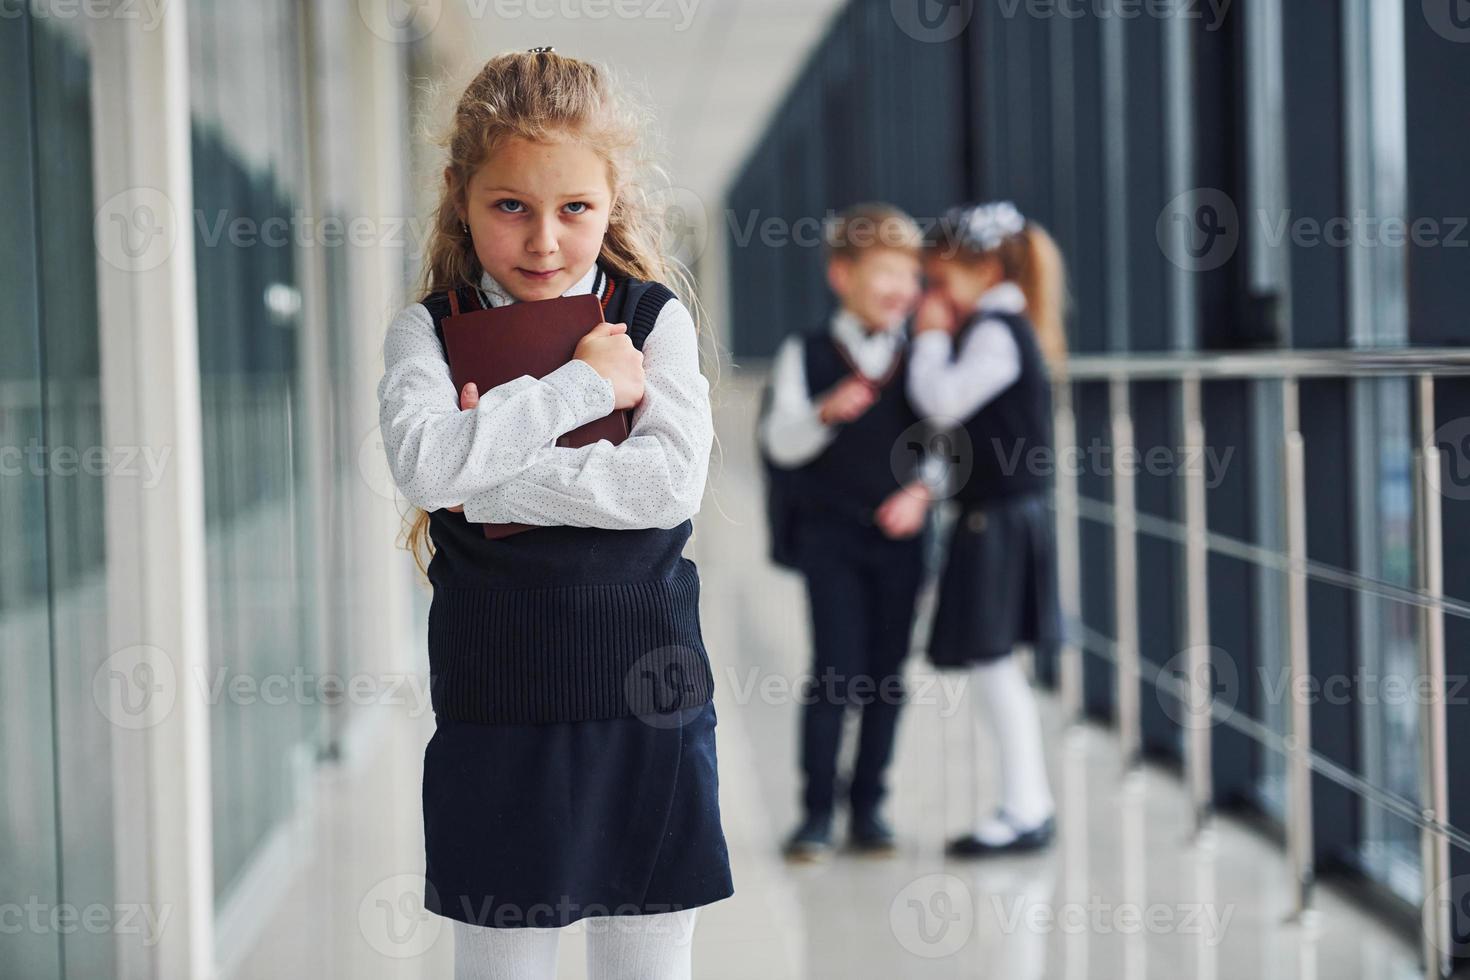 la niña es acosada. concepción del acoso. niños de la escuela en uniforme juntos en el pasillo foto